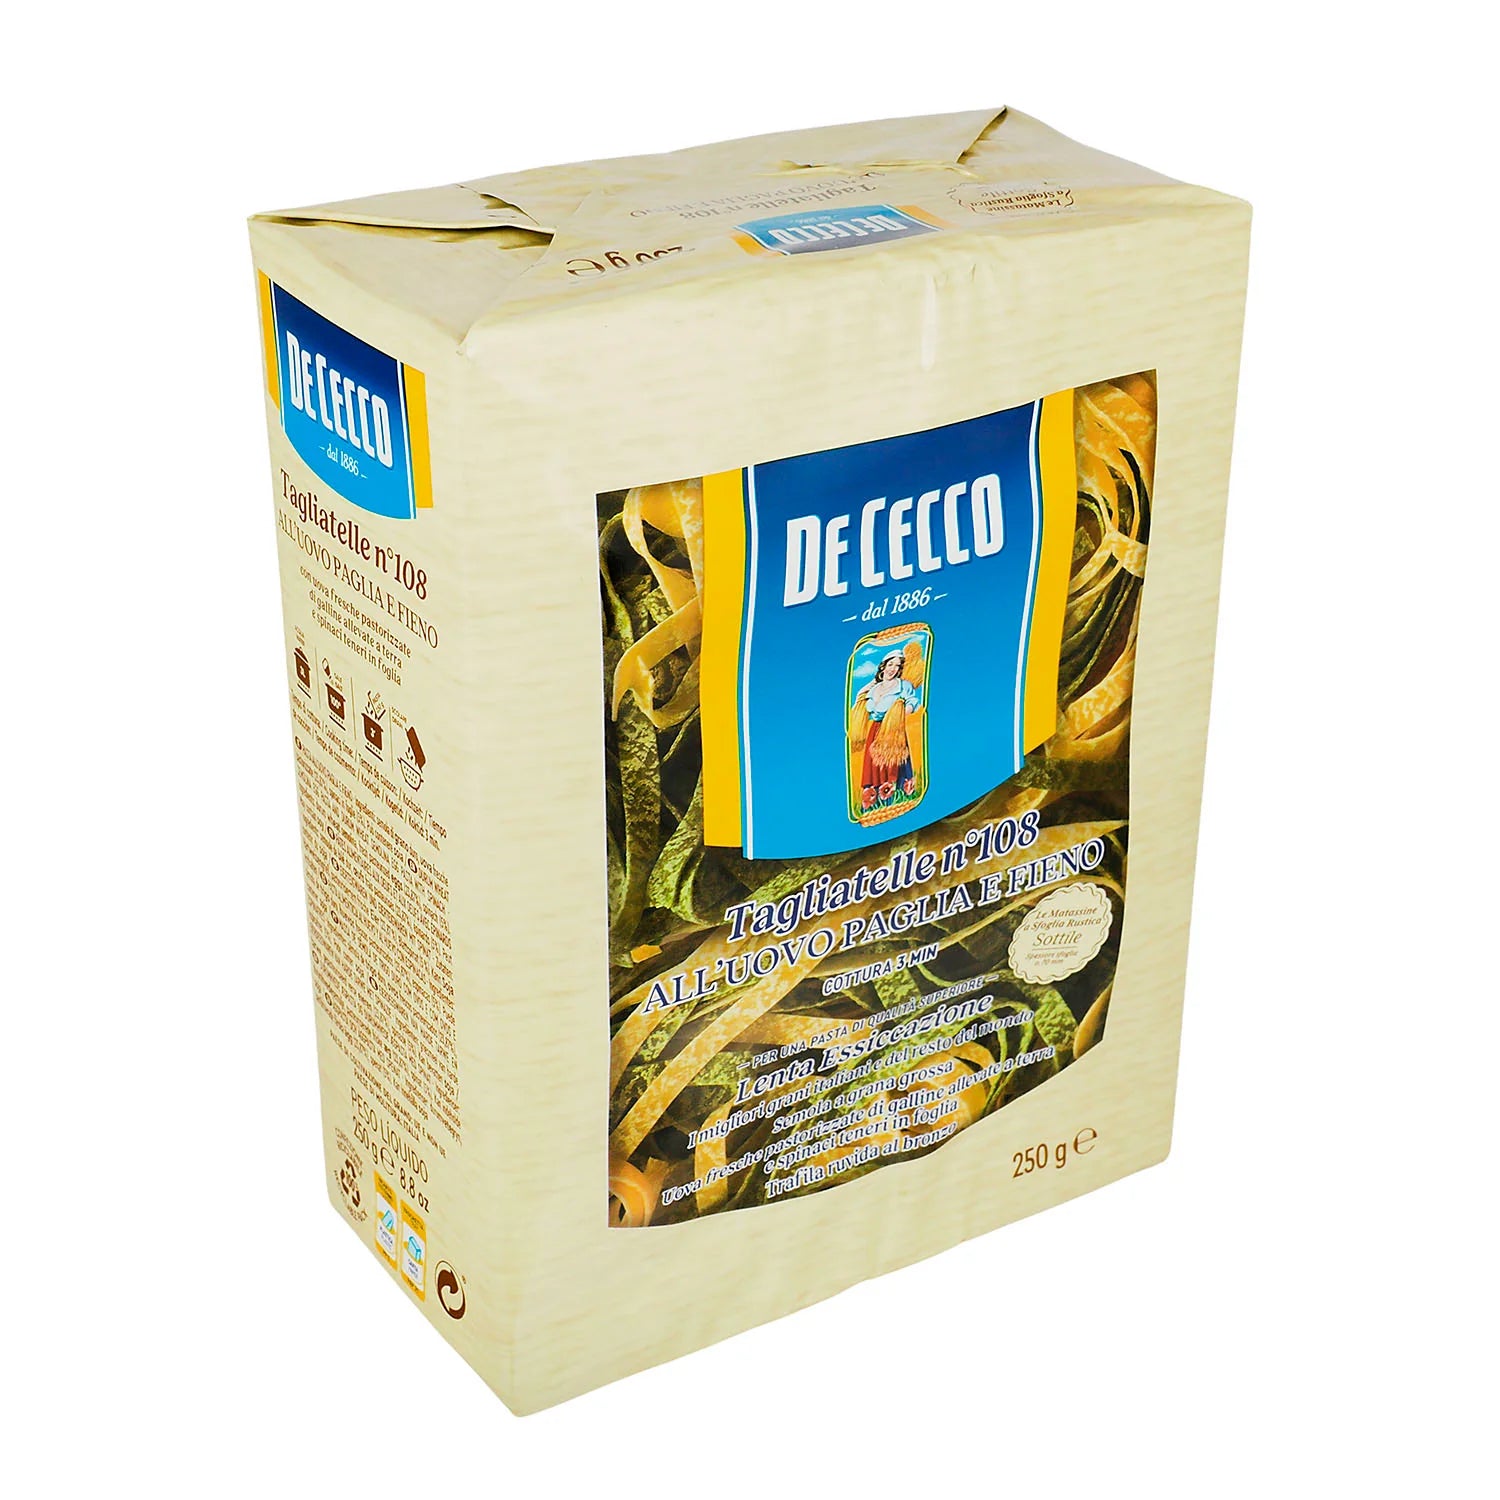 Pasta - De Cecco Tagliatelle Paglia e Fieno Con Huevo y Espina - 250 gr